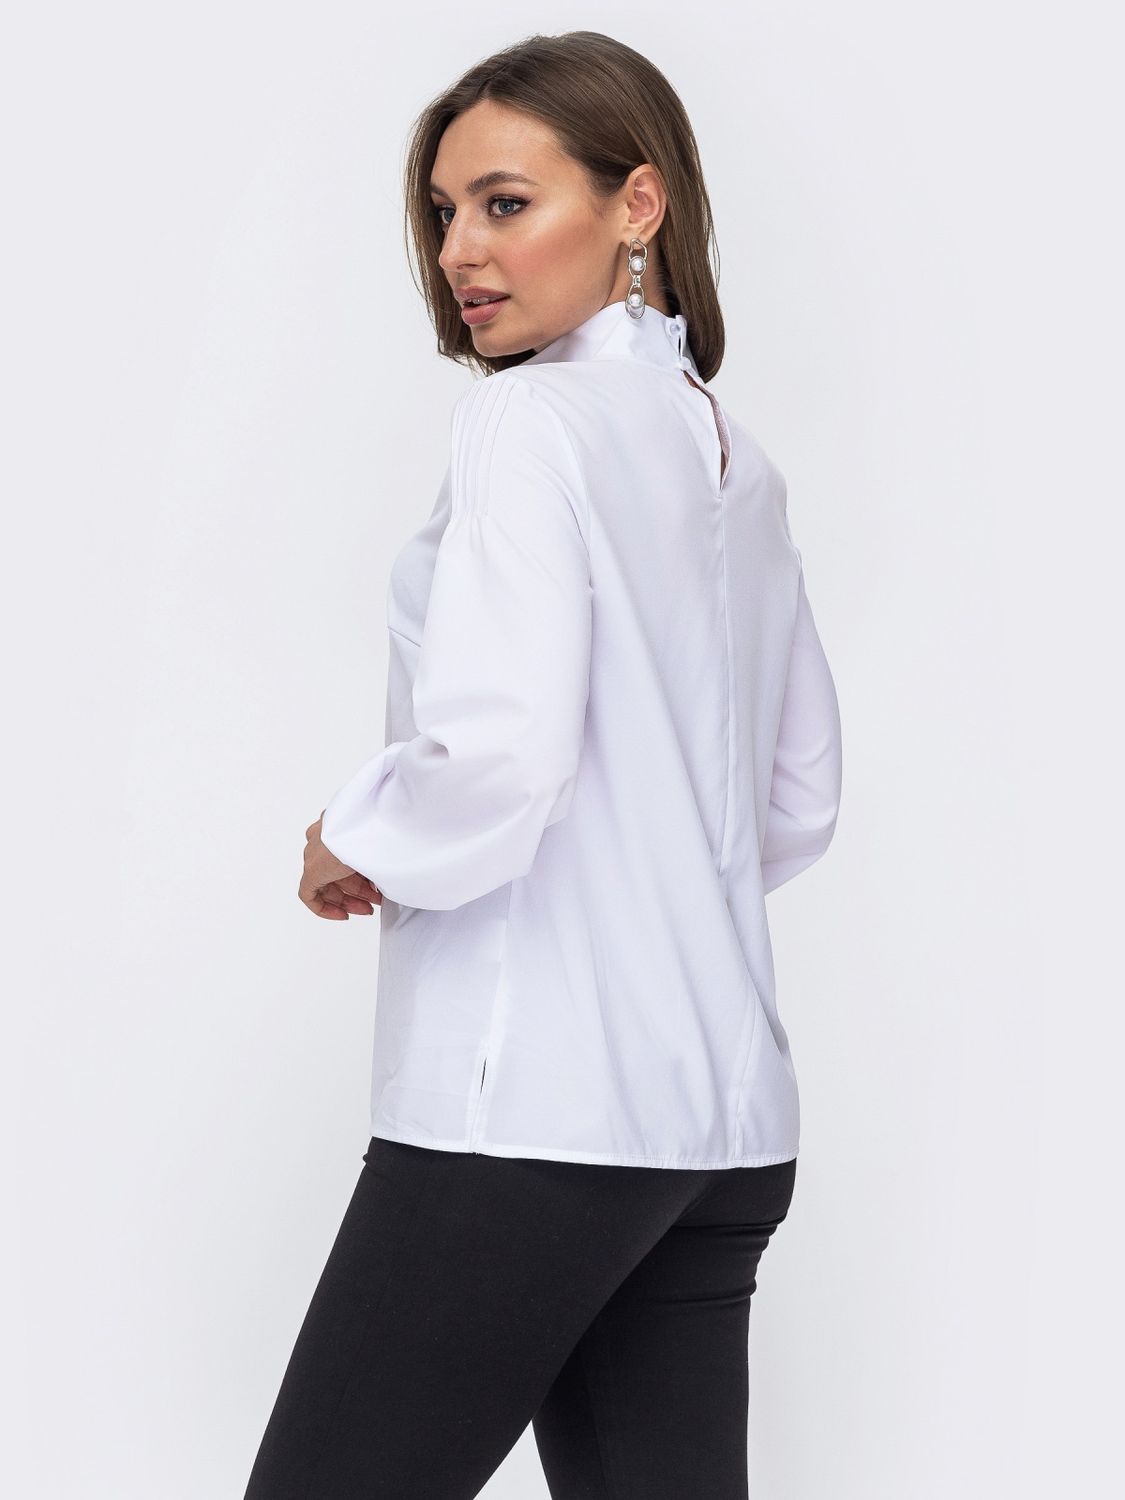 Белая блузка с воротником-стойкой - фото